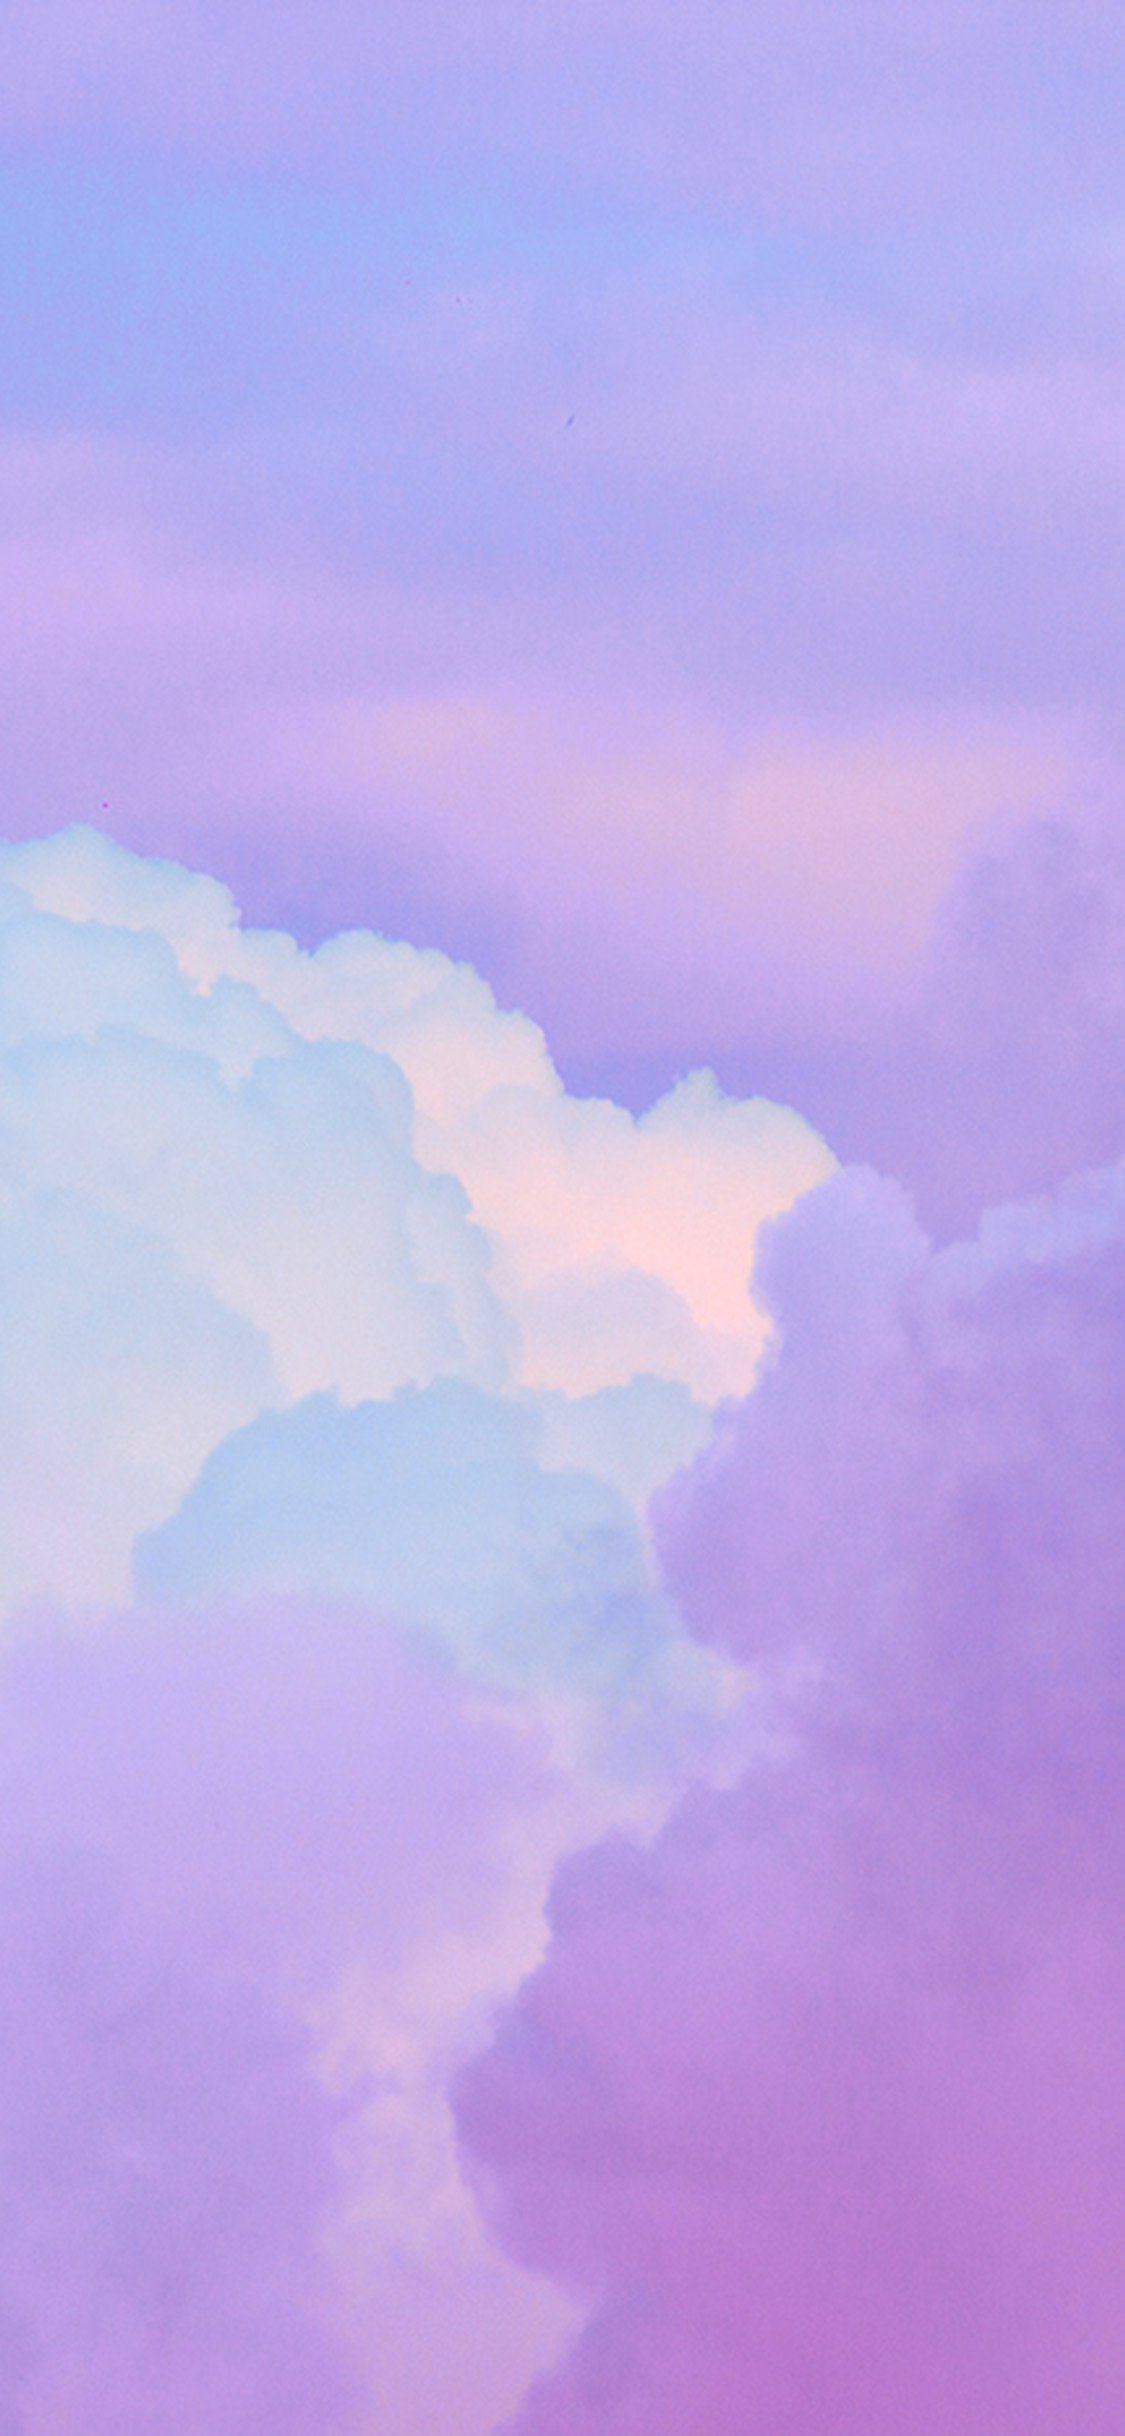 Những hình nền IOS với đám mây và cây, được thiết kế với gam màu tím, sẽ khiến bạn ngỡ ngàng với sự đẹp đẽ và duyên dáng của chúng. Tận hưởng những khung cảnh thiên nhiên tuyệt đẹp của đám mây Cumulus và tìm hiểu thêm về những tính năng mới của IOS.